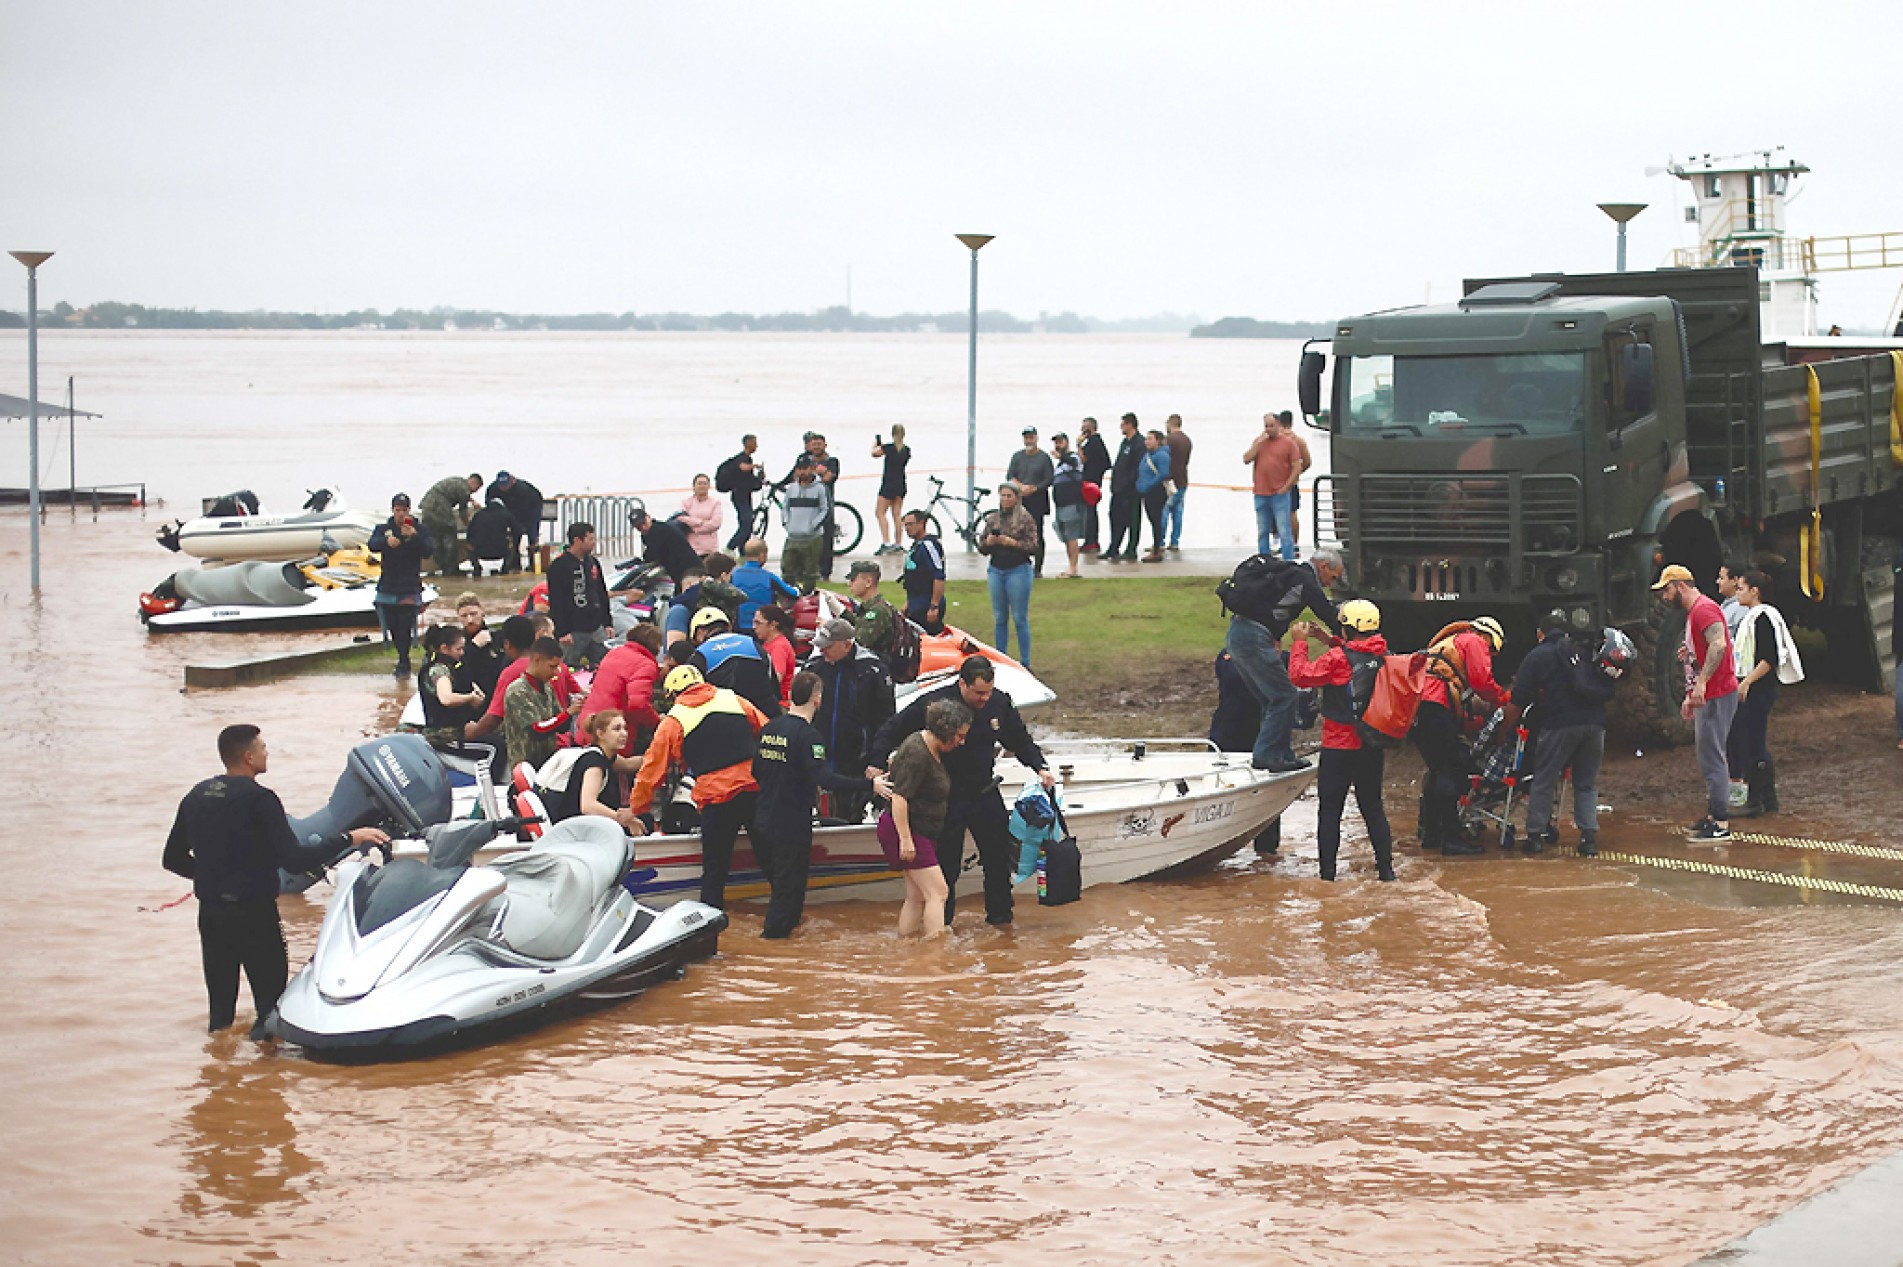  Equipes de socorro resgatam de barco famílias que ficaram ilhadas pela enchente
